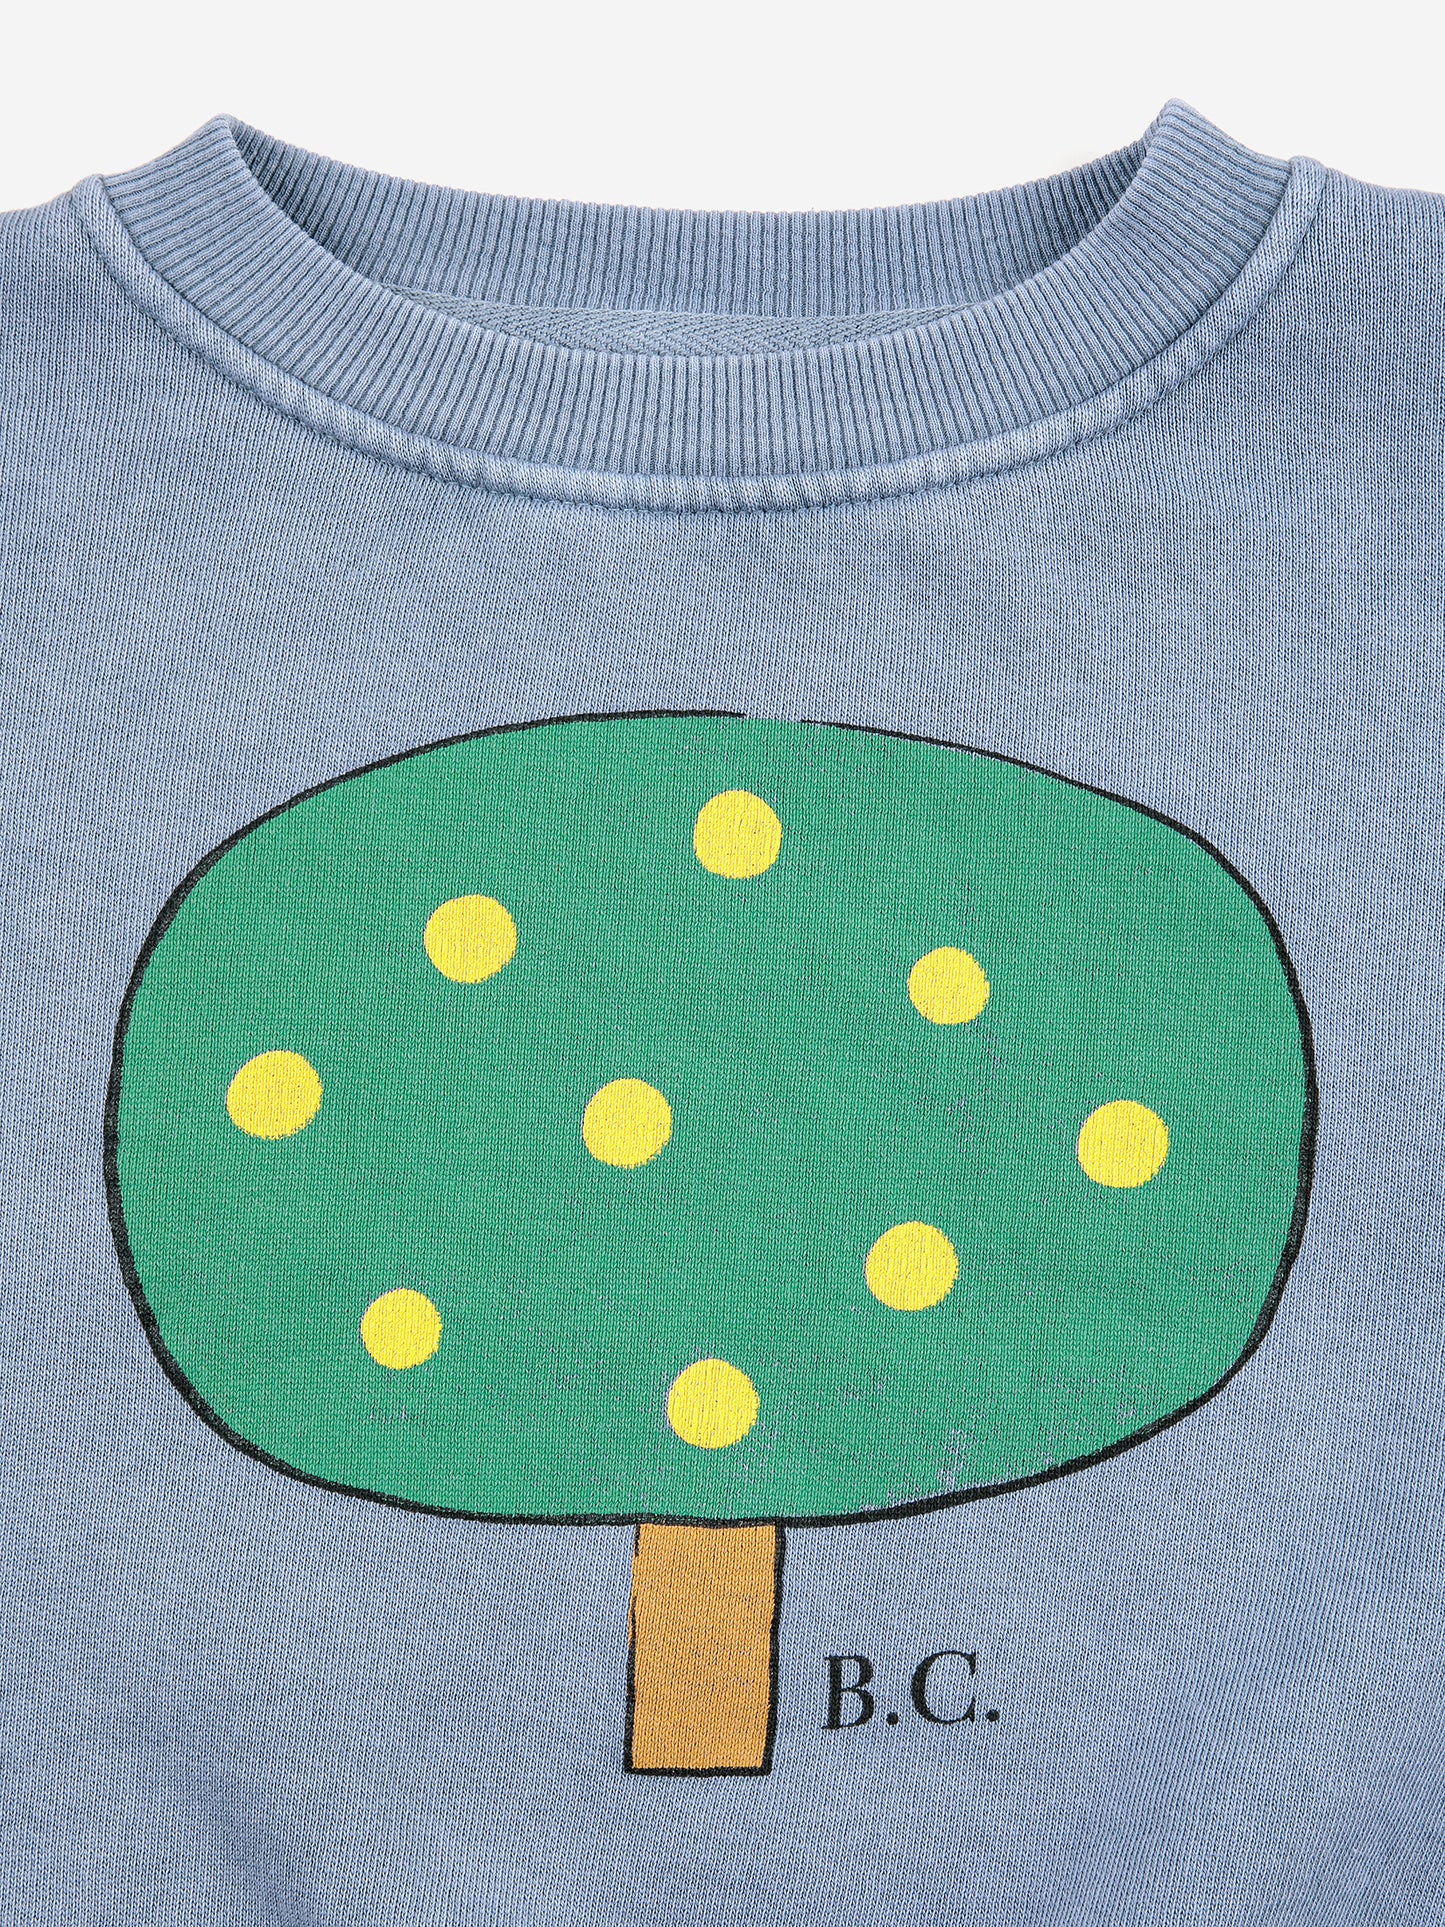 Sweatshirt | GREEN TREE